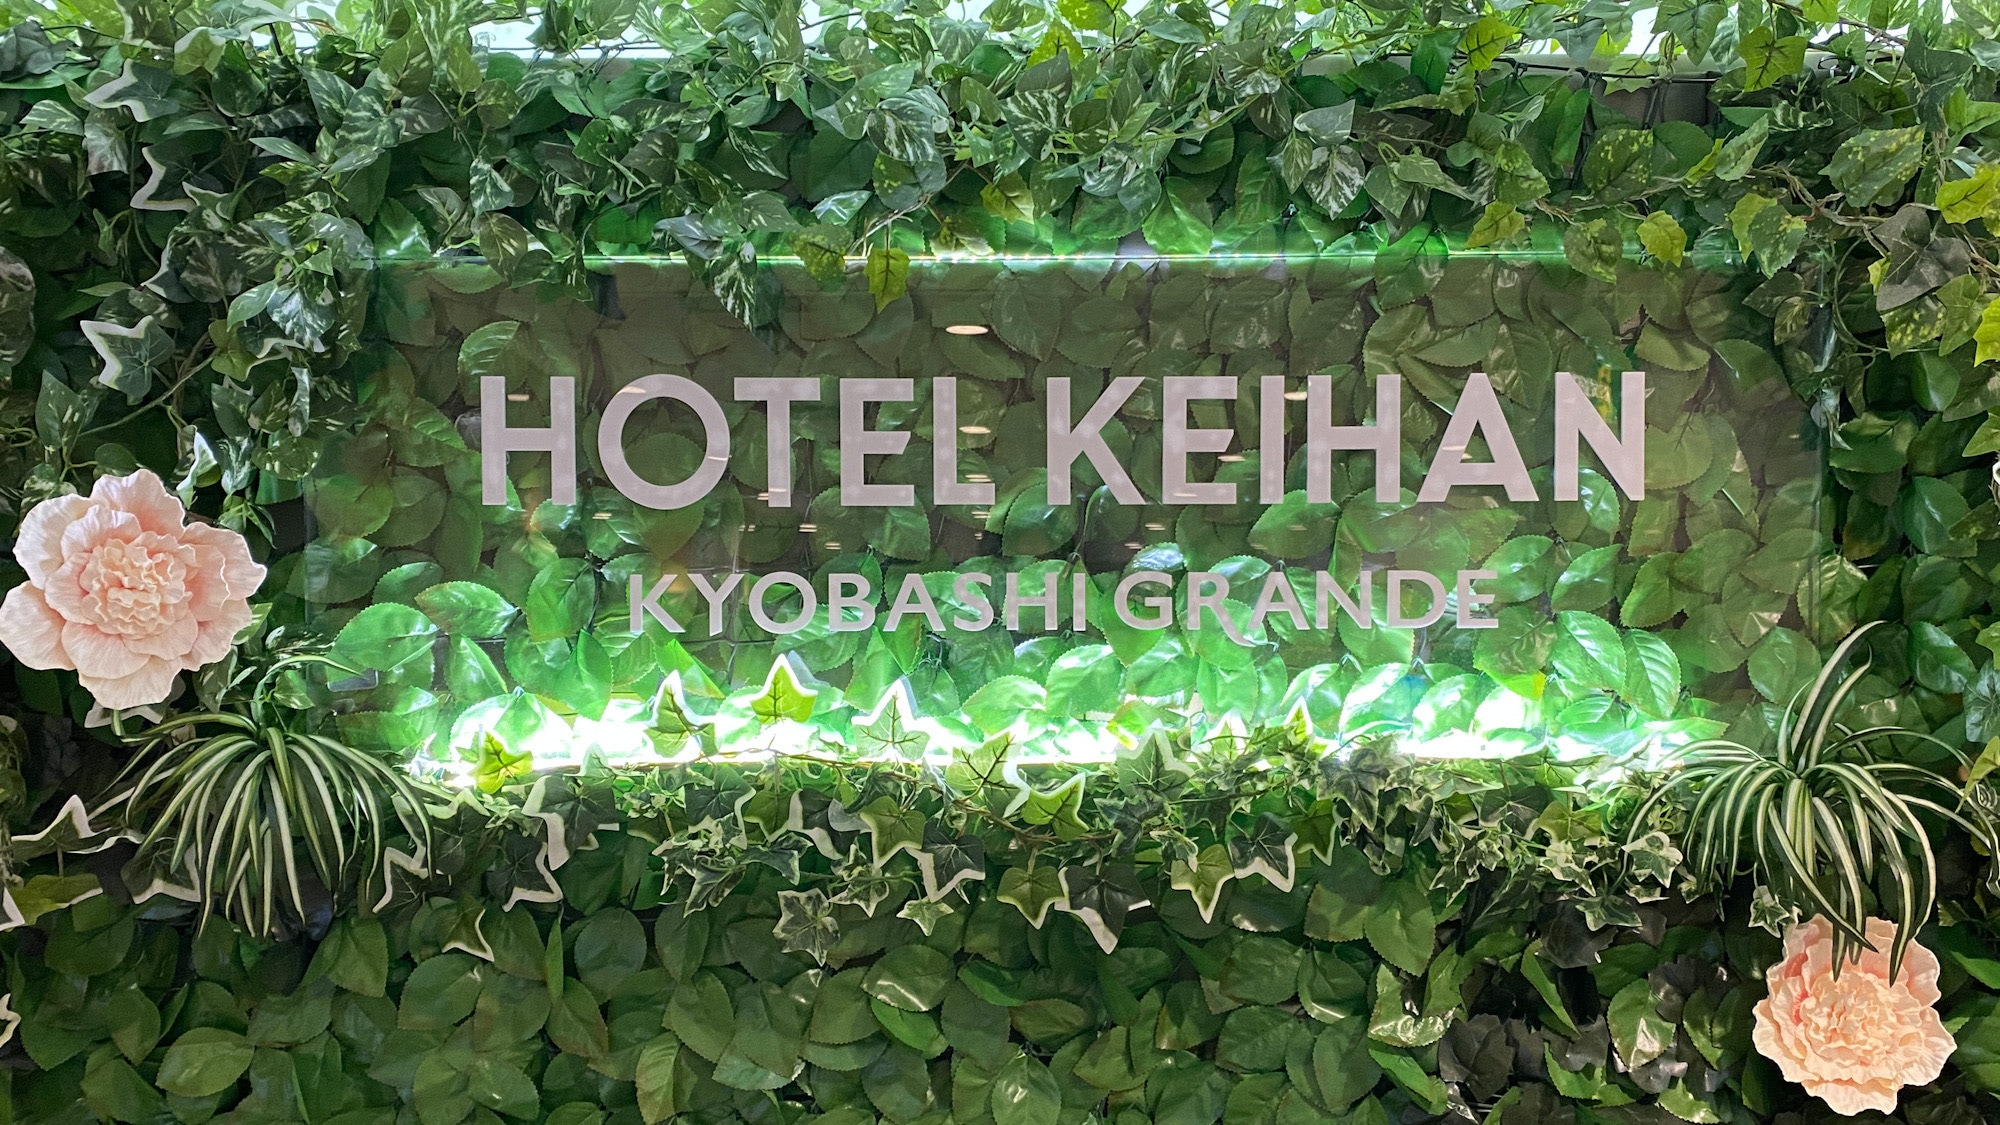 ☆ Hotel Keihan Kyobashi Grande ☆